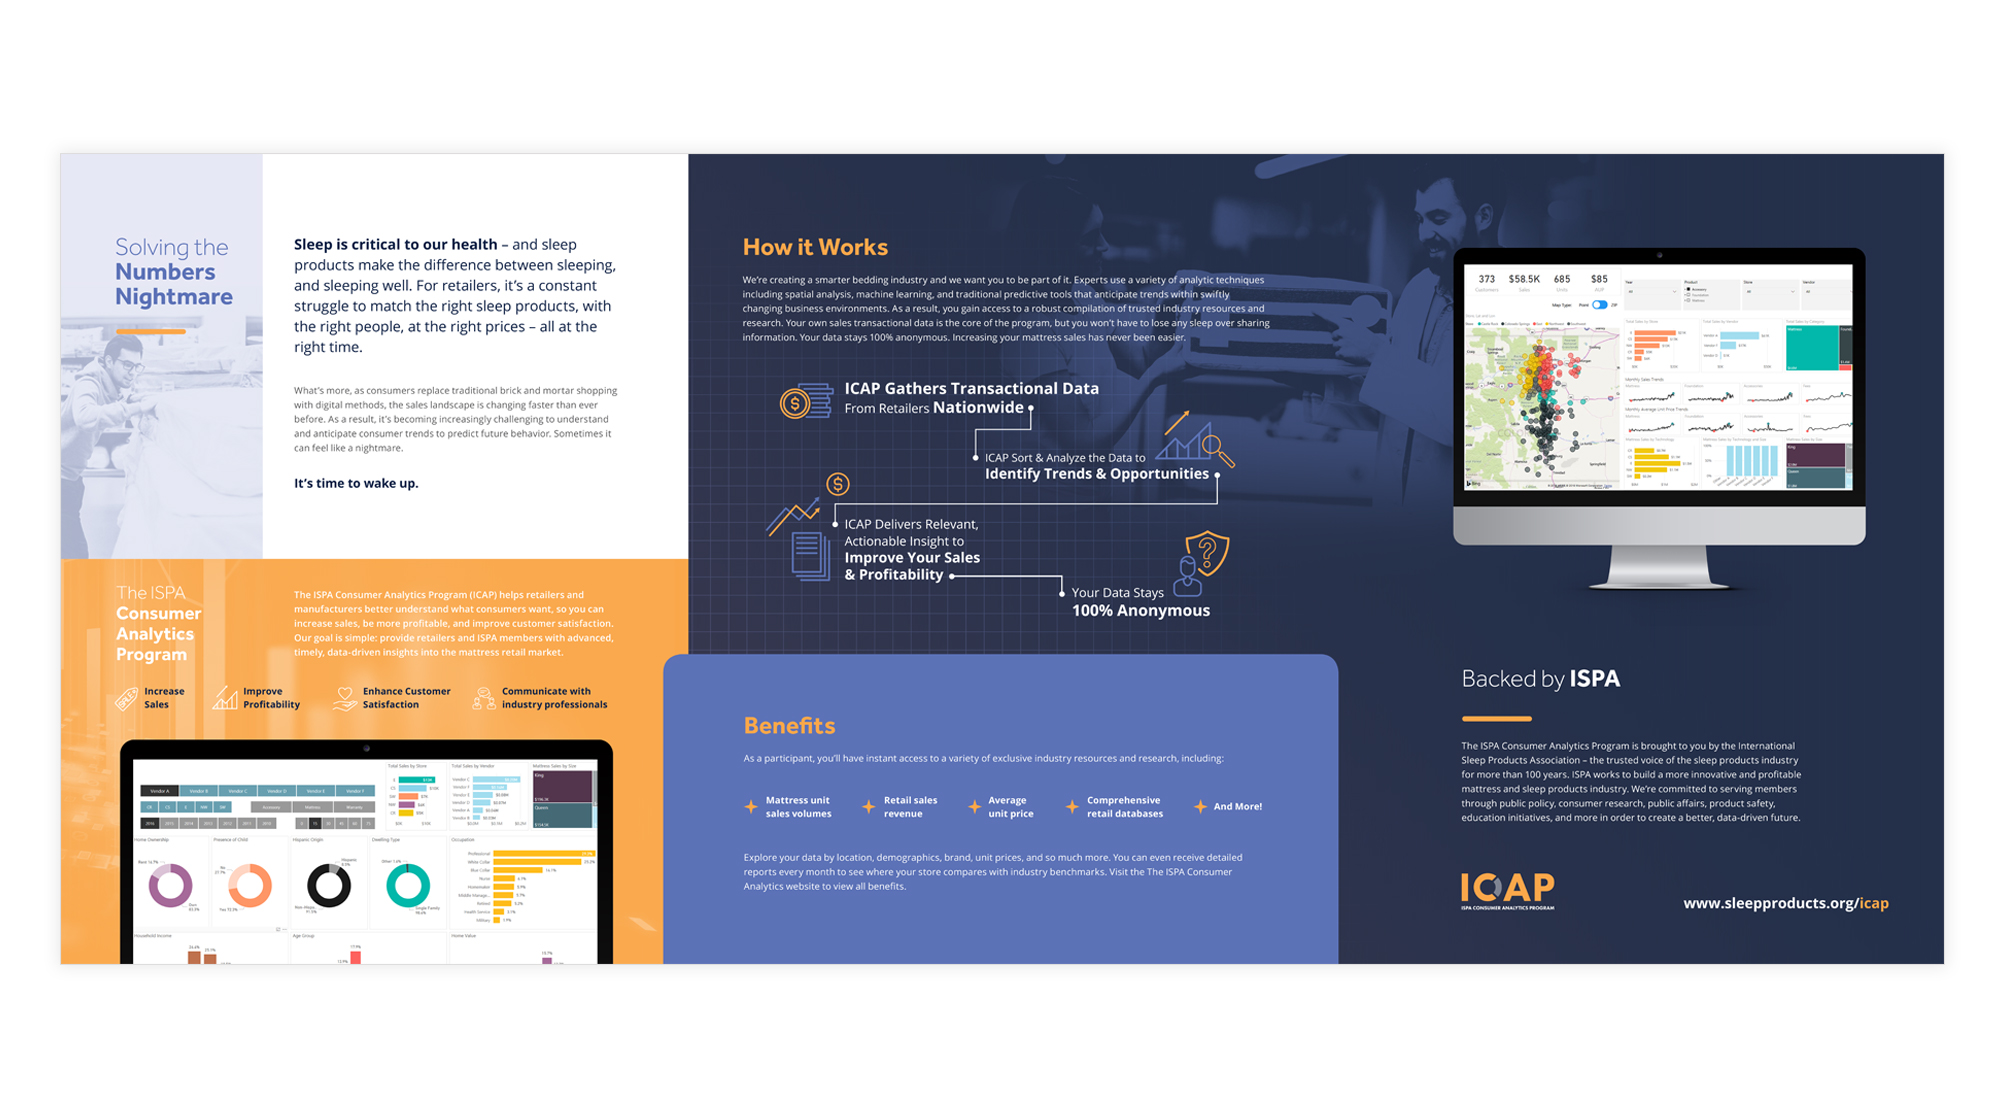 ICAP-inside.jpg